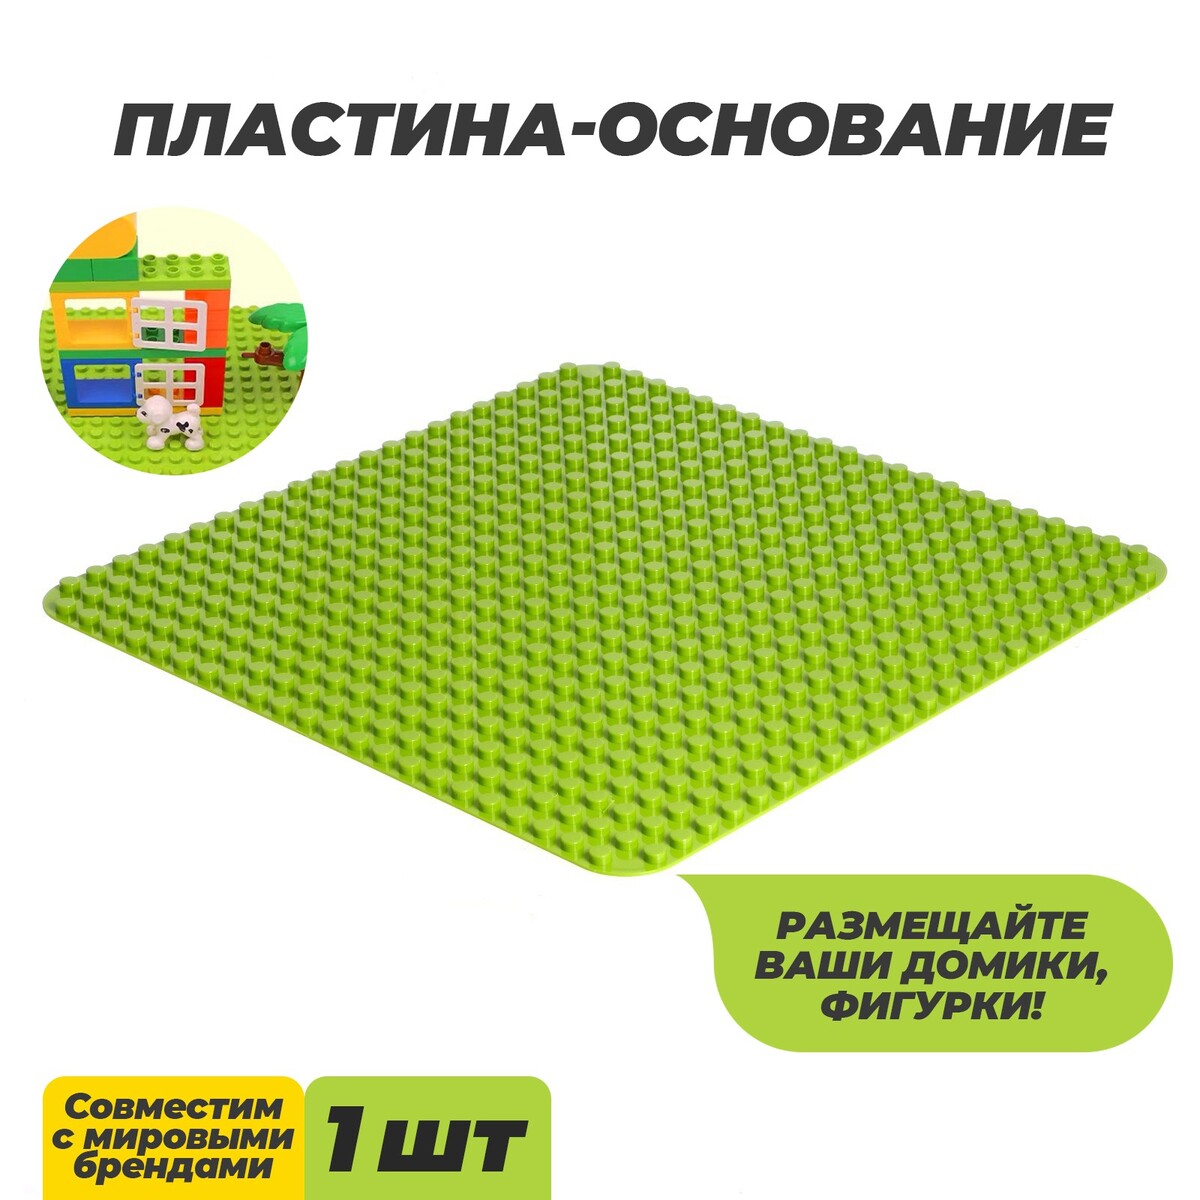 Пластина-основание для конструктора, 38,4 × 38,4 см, цвет салатовый пластина основание для конструктора 40 х 40 см зеленый